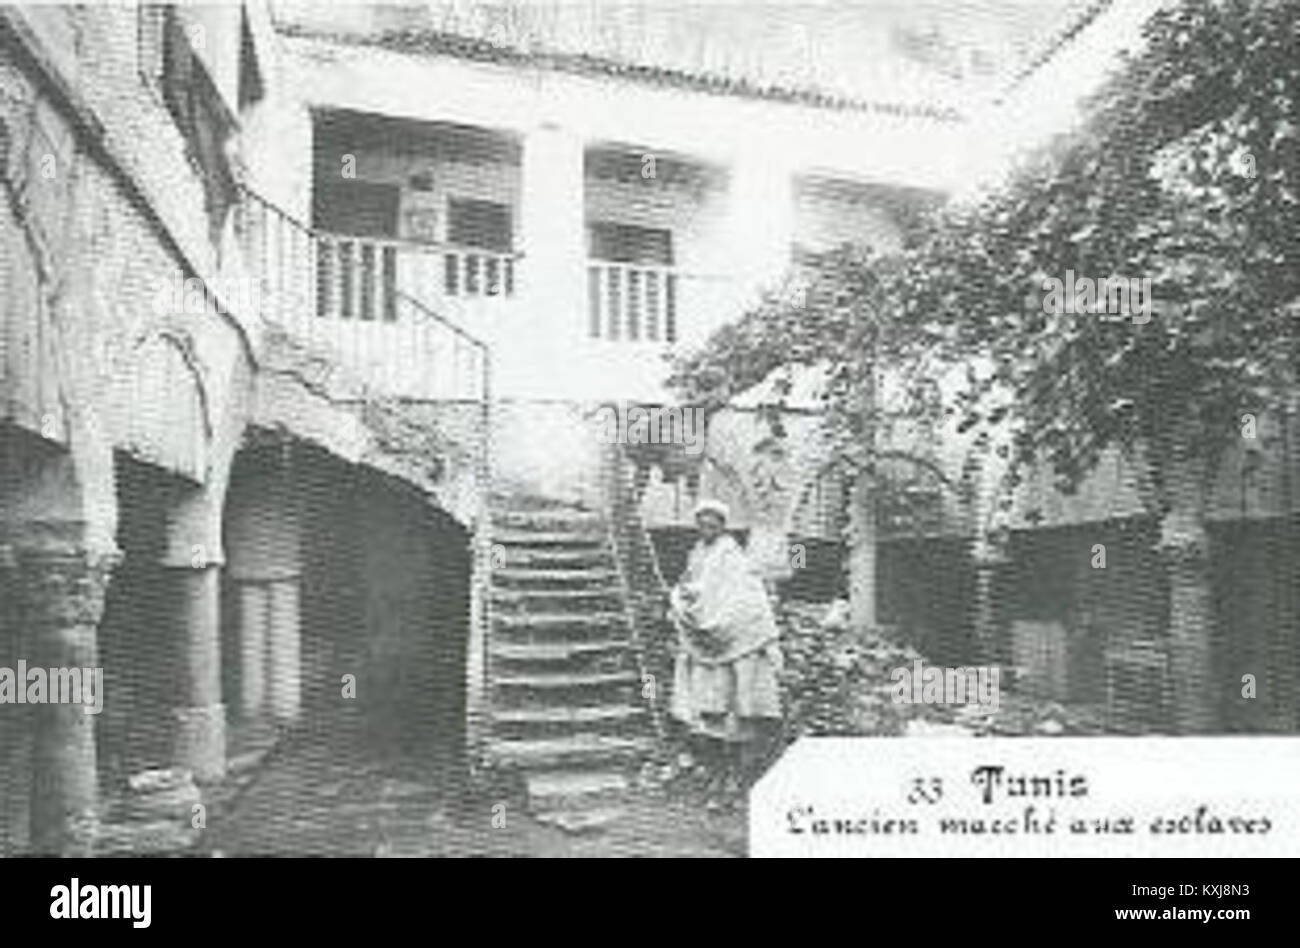 Ancien marché aux esclaves - Médina de Tunisi Foto Stock